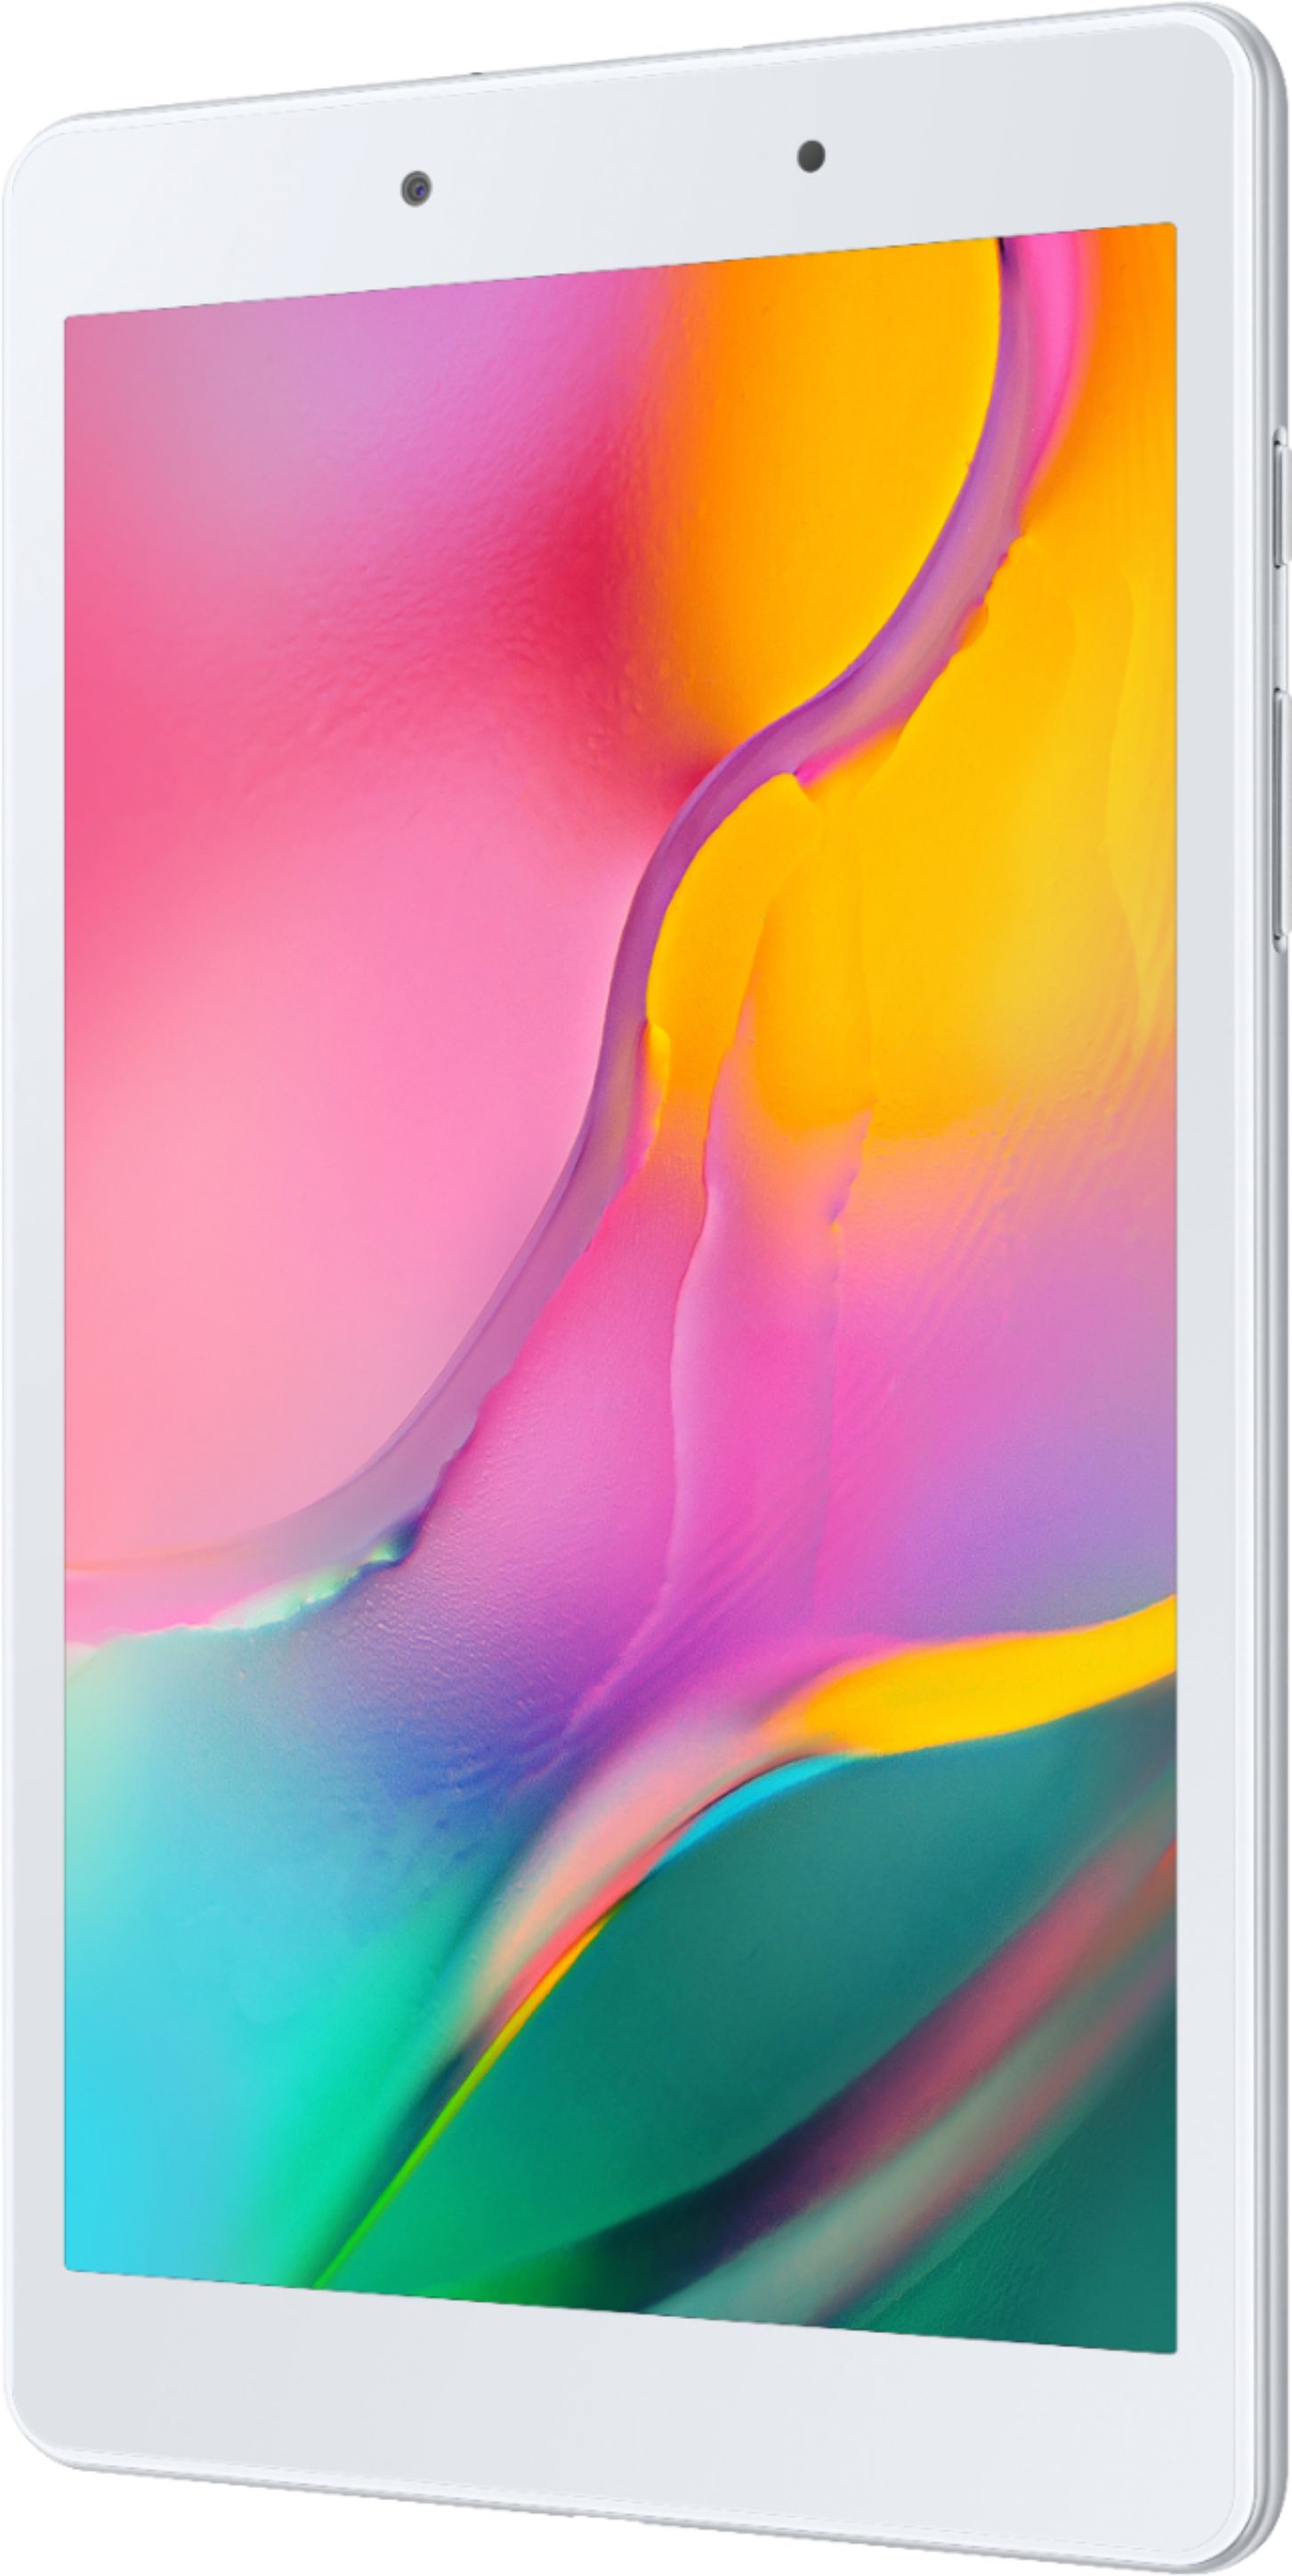 Best Buy: Samsung Galaxy Tab A (Latest Model) 8